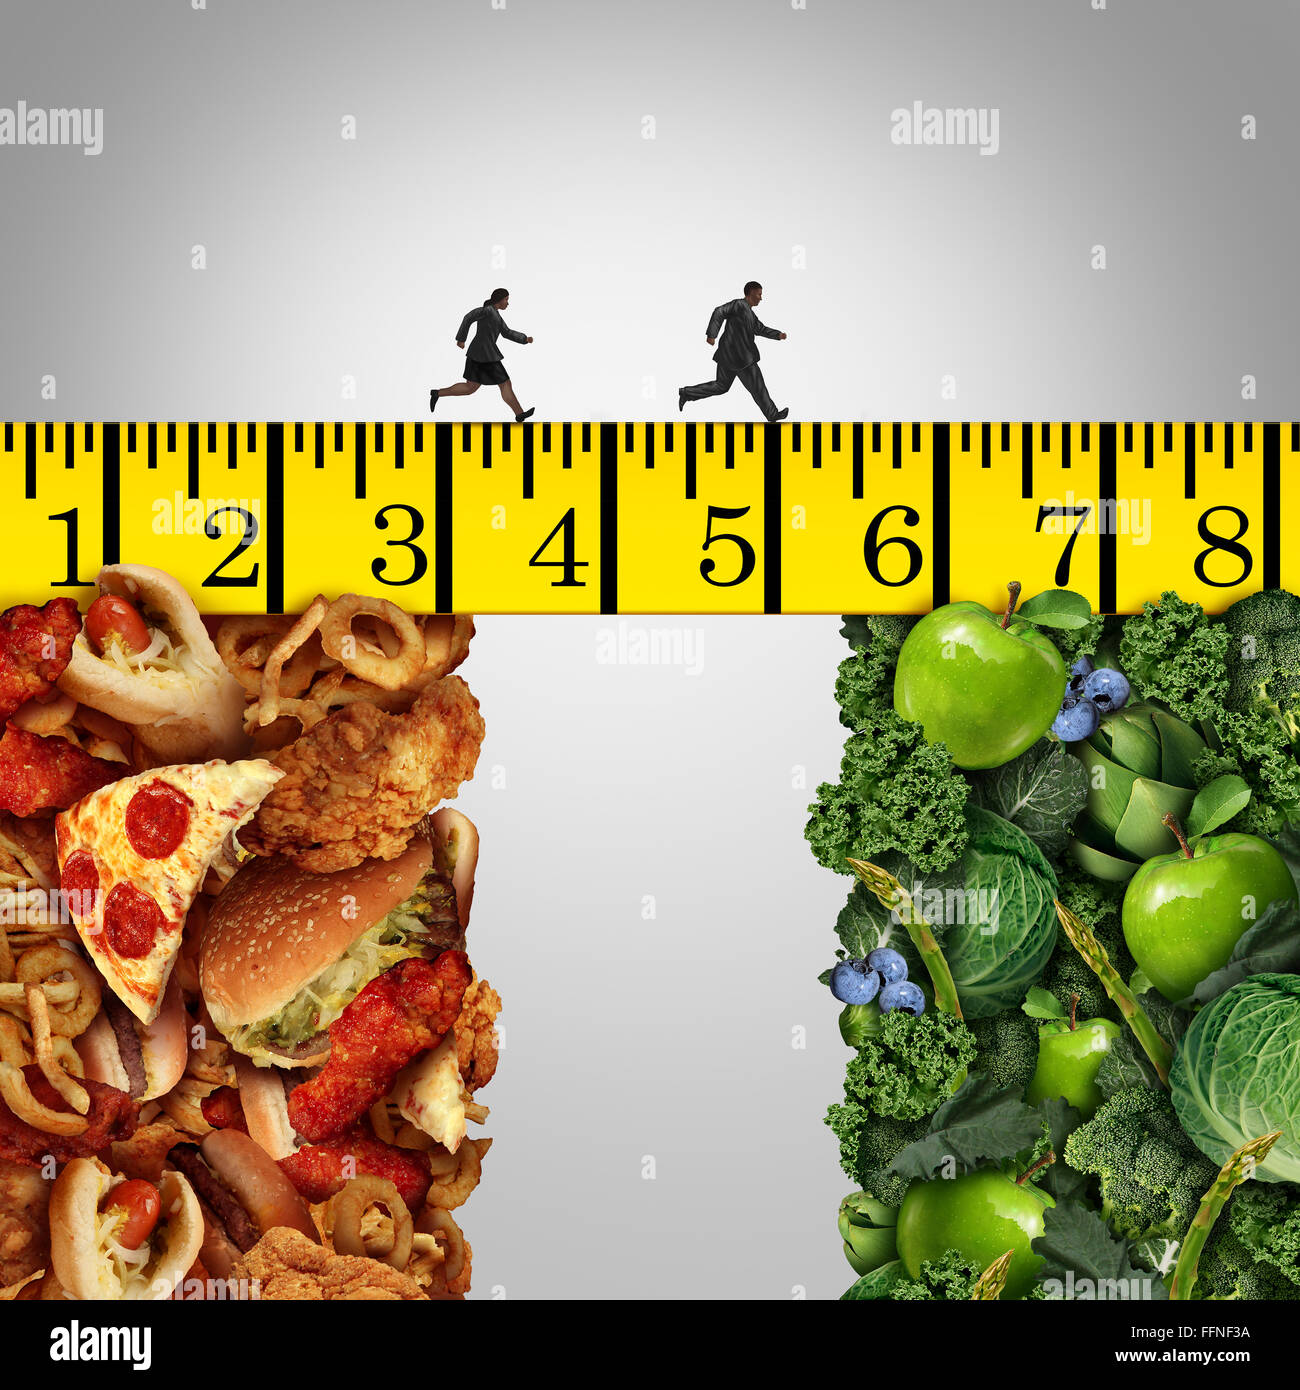 Changer de vie comme un régime alimentaire et de remise en forme avec un concept de l'embonpoint et obésité femme homme qui court sur un ruban à mesurer pont à traverser plus d'aliments malsains pour les fruits et légumes. Banque D'Images